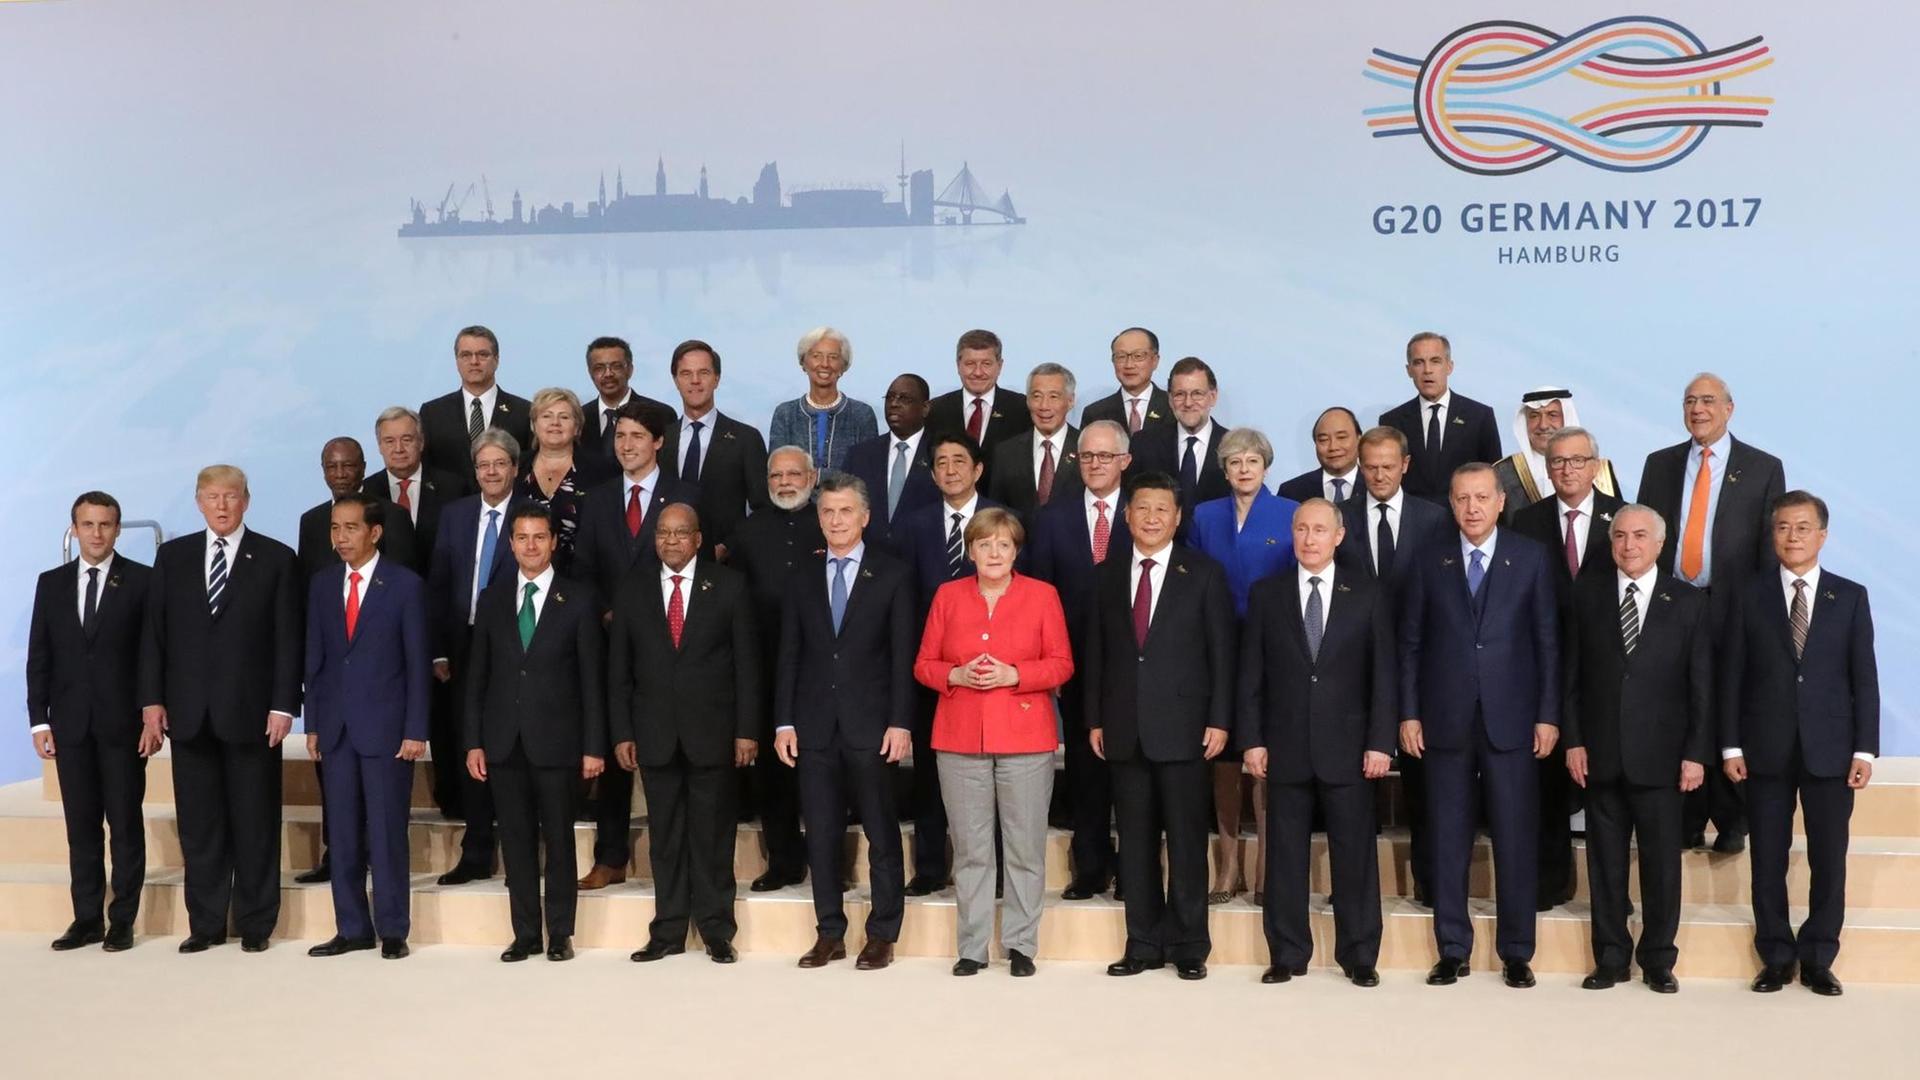 Bundeskanzlerin Angela Merkel steht mit den teilnehmenden Staats- und Regierungschefs (7.7.17) in Hamburg beim G20-Gipfel zusammen für ein Familienfoto. G20-Gipfel - Familienfoto